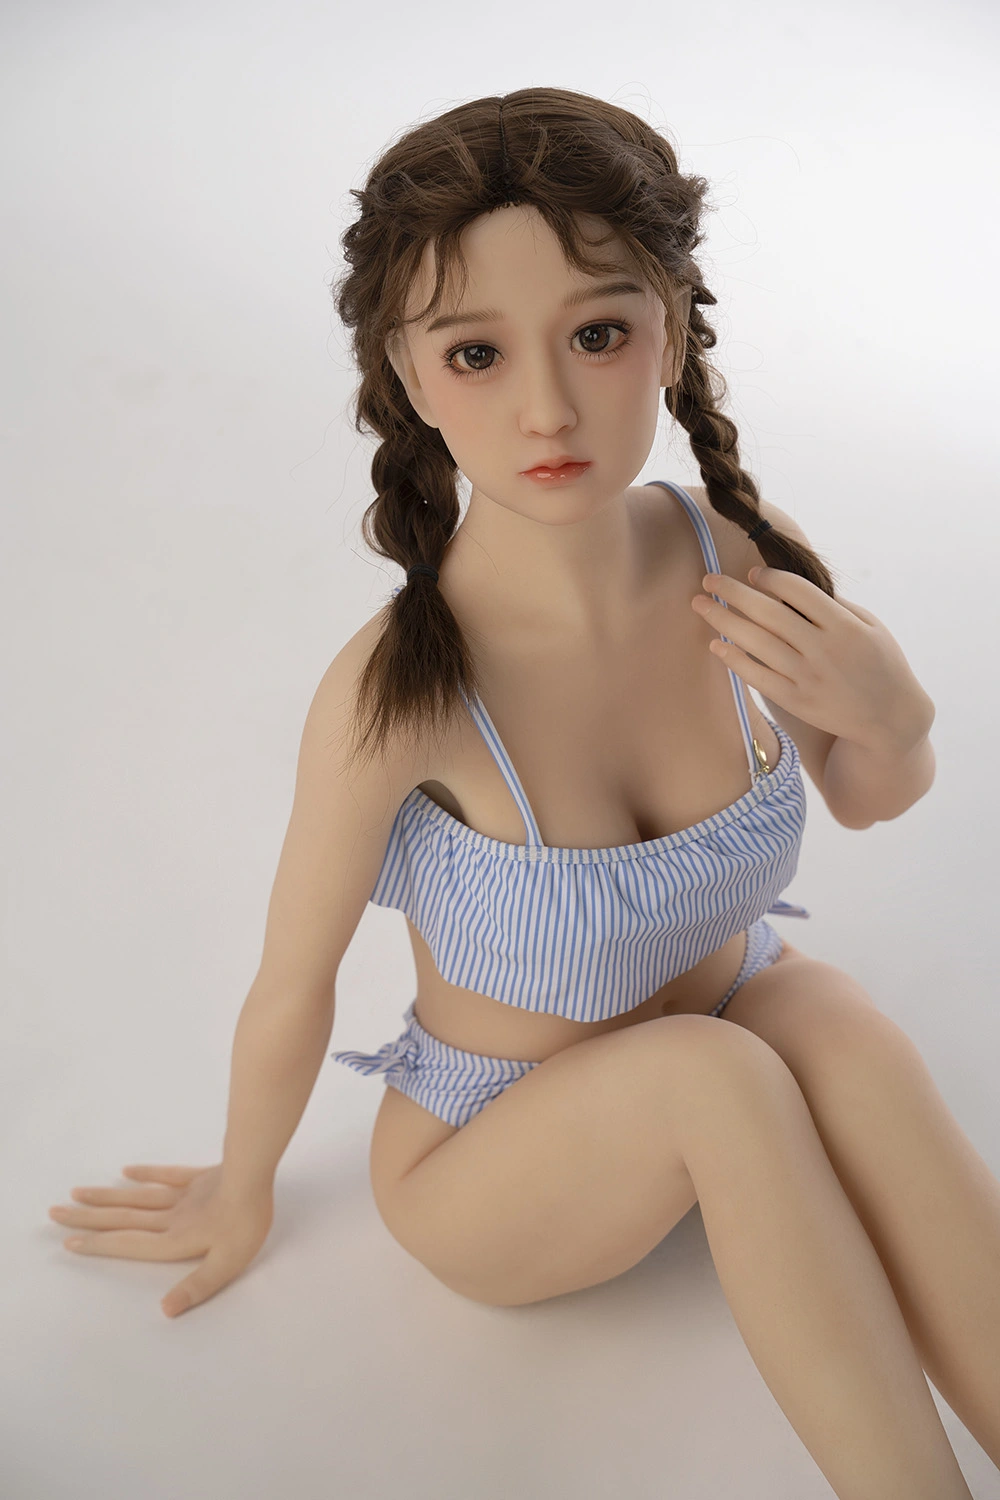 セックス人形 130cm 美乳 ロリ